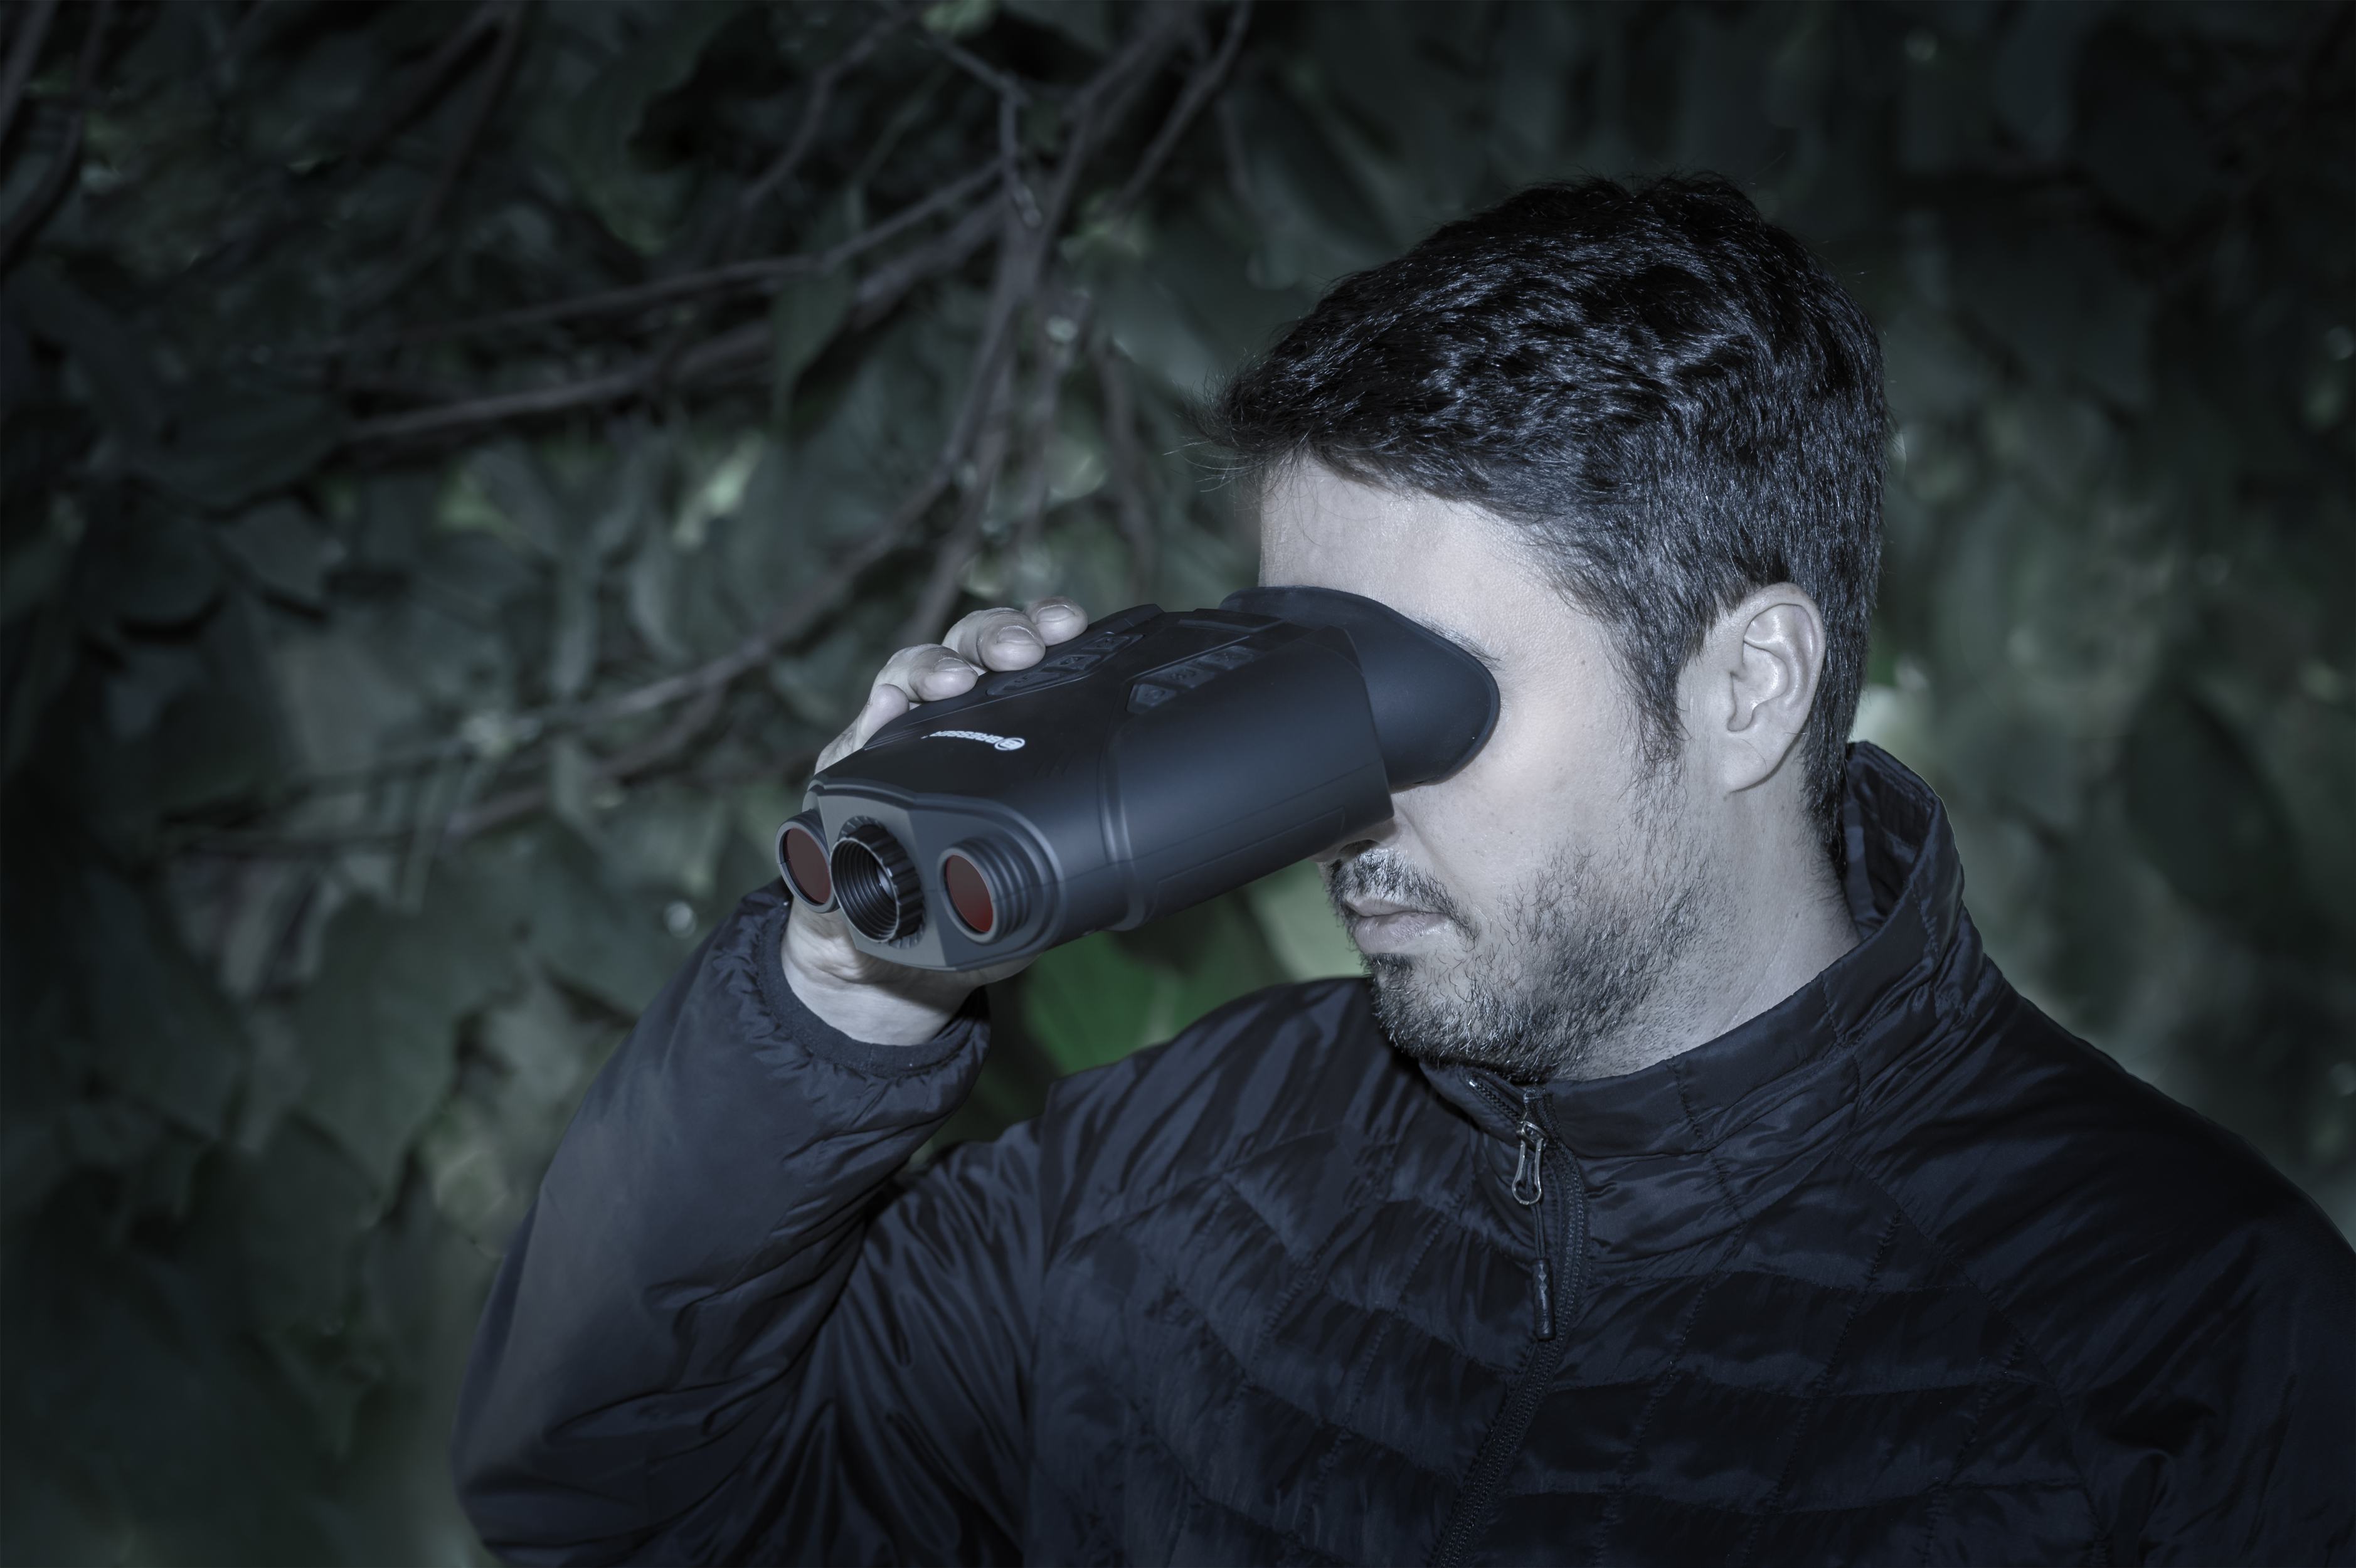 BRESSER Digitales Nachtsichtgerät binokular 3x Nightlux 200 Pro